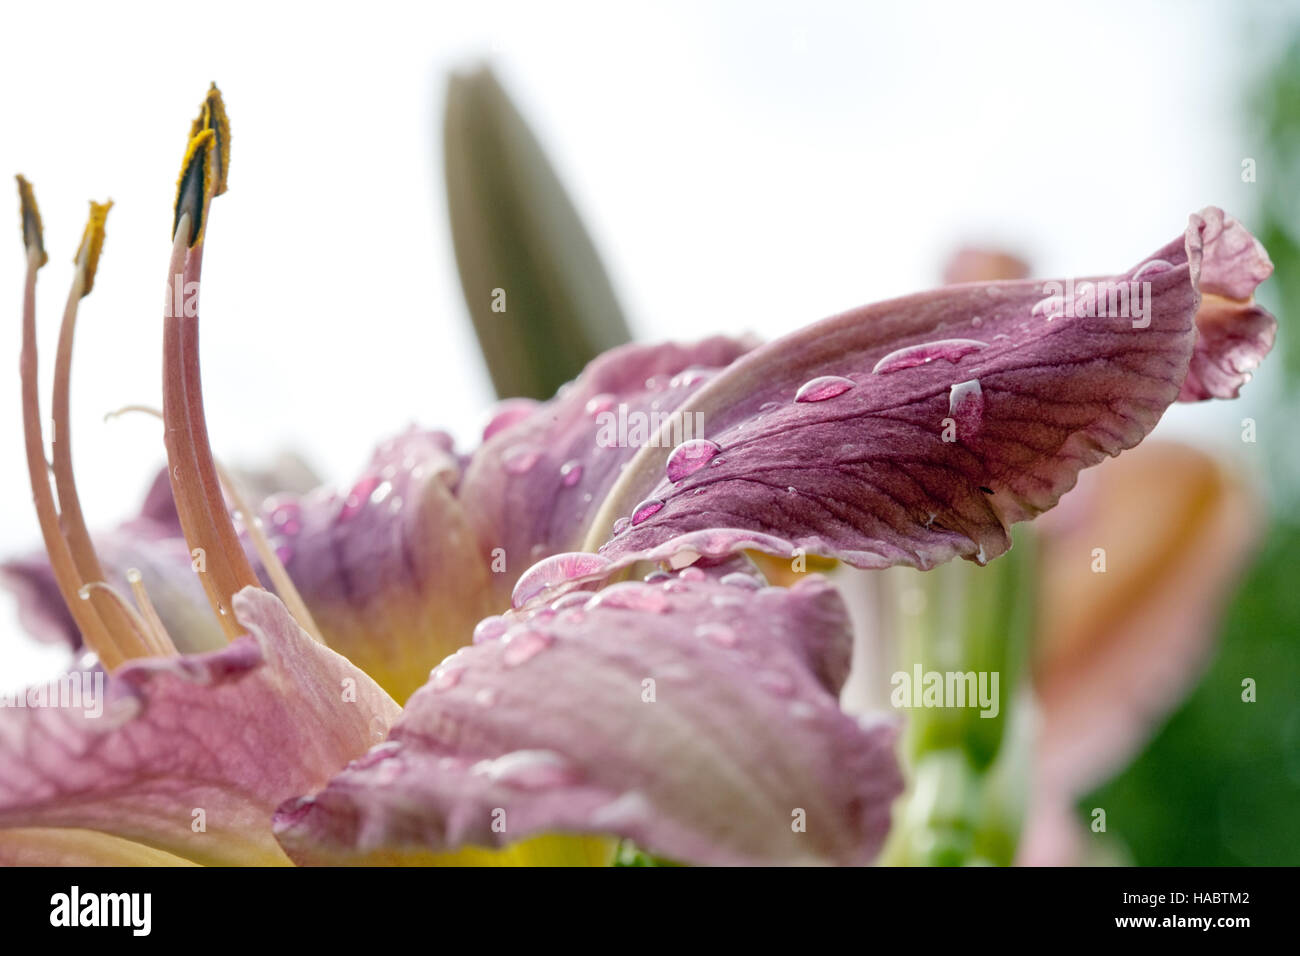 Fading Lilie Blume Nahaufnahme mit Blütenblatt, Staubgefäße und Stempel Stockfoto